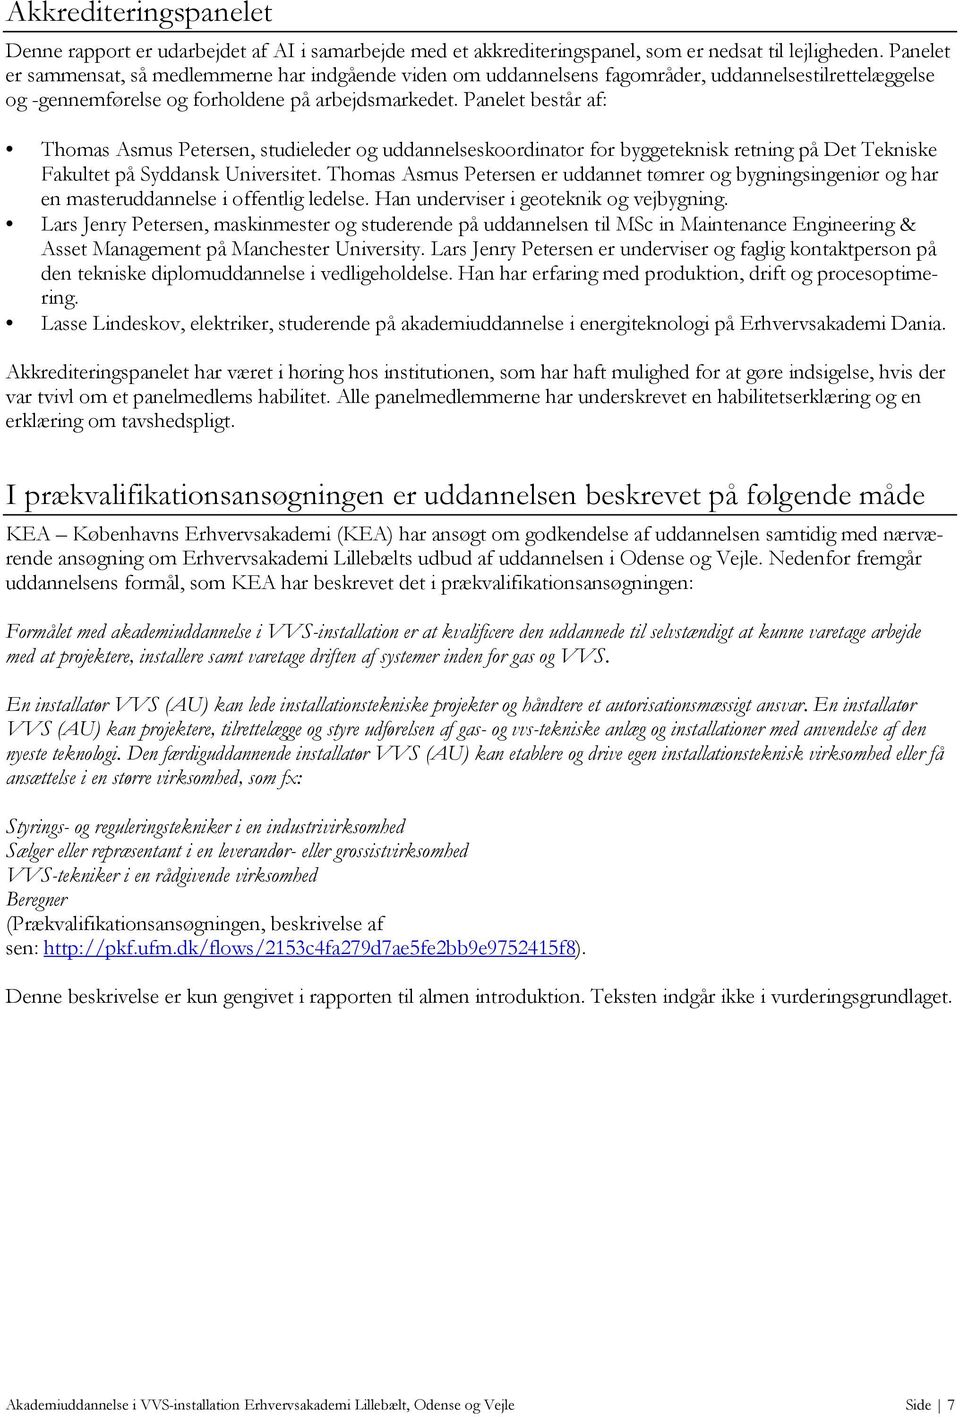 Akkrediteringsrapport. Nyt udbud af ny uddannelse. Akademiuddannelse i  VVS-installation Erhvervsakademi Lillebælt, Odense og Vejle - PDF Free  Download